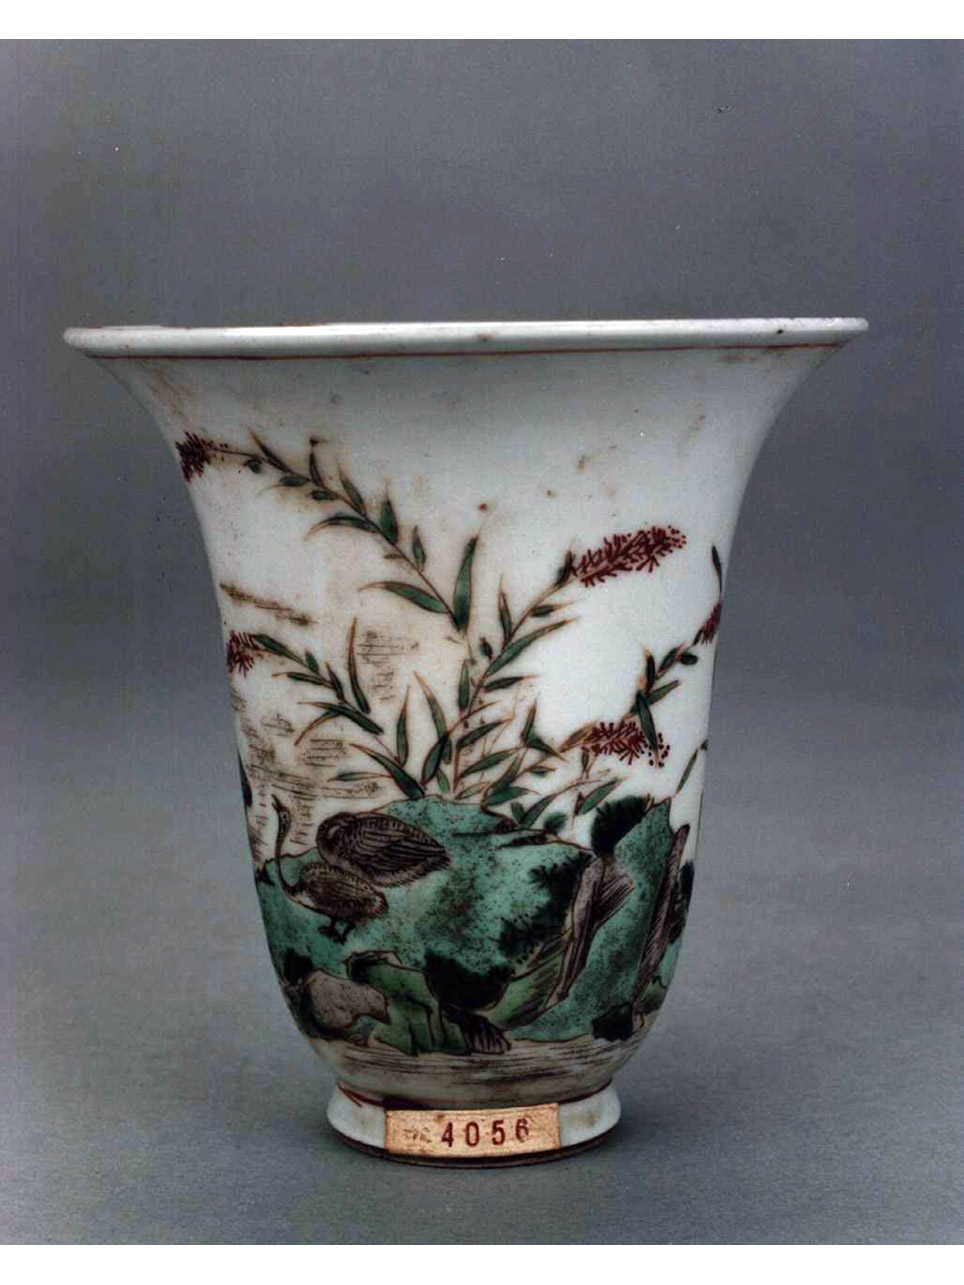 motivi decorativi vegetali e animali (vasetto) - manifattura cinese (secc. XVII/ XVIII)